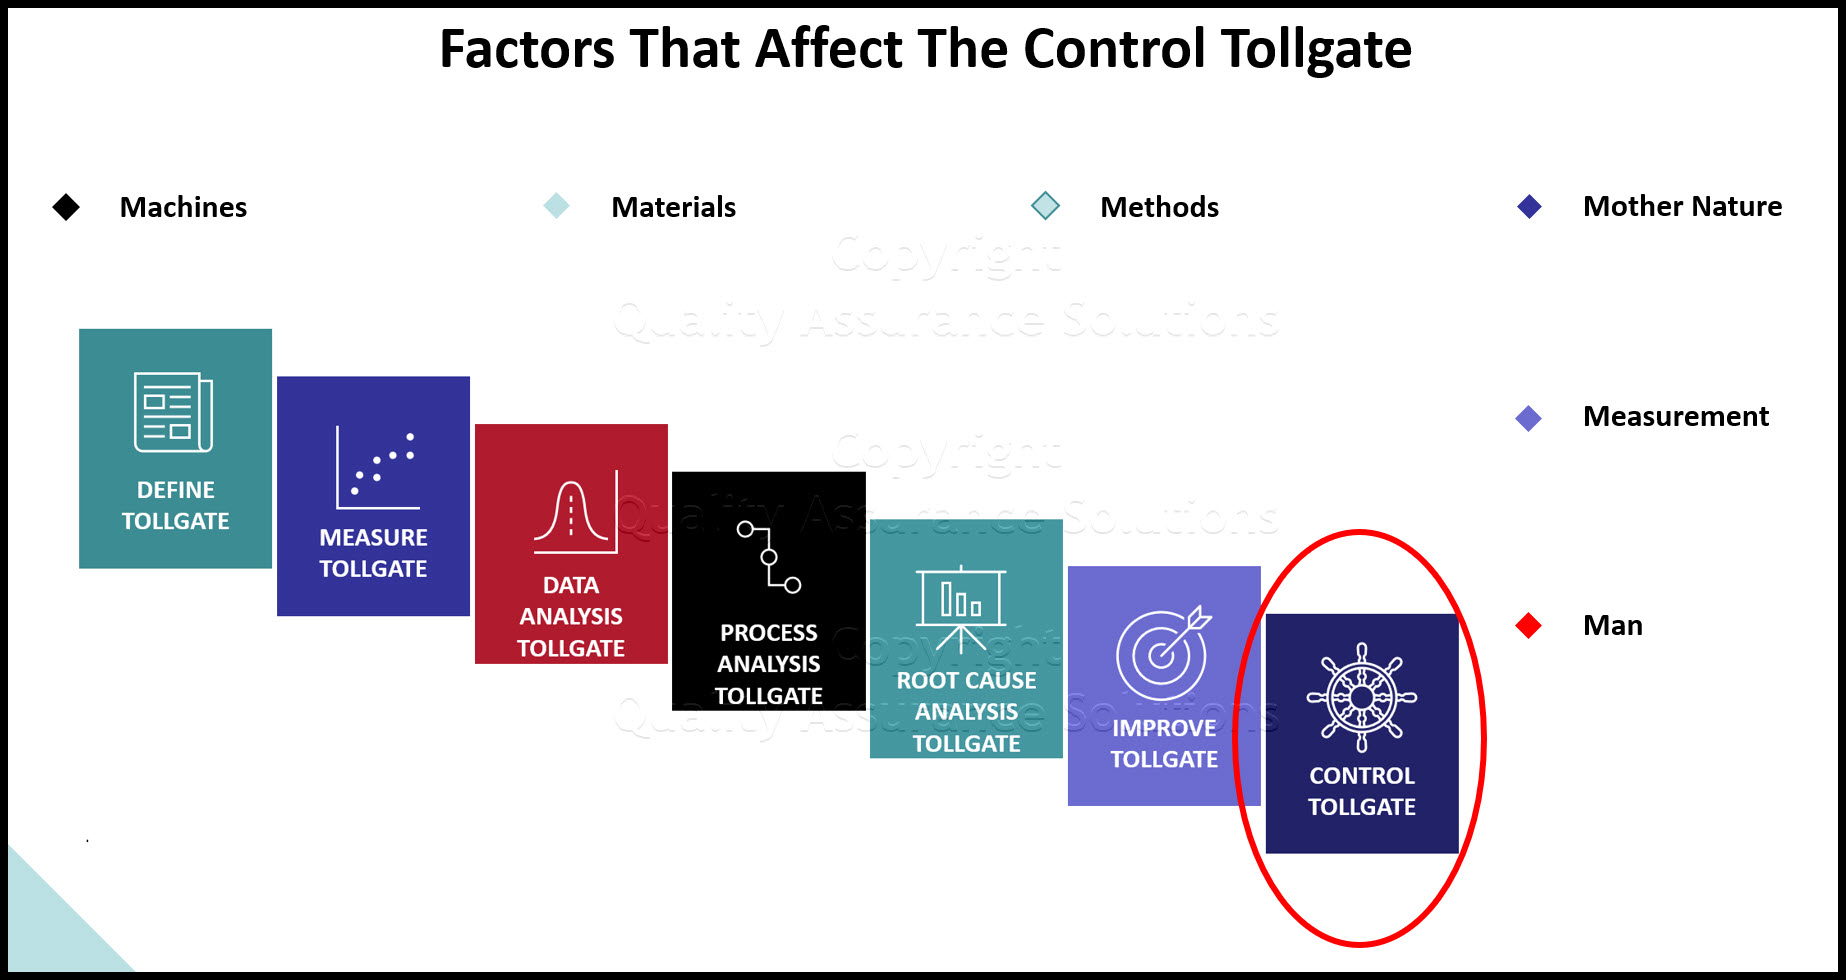 Control Tollgate slide